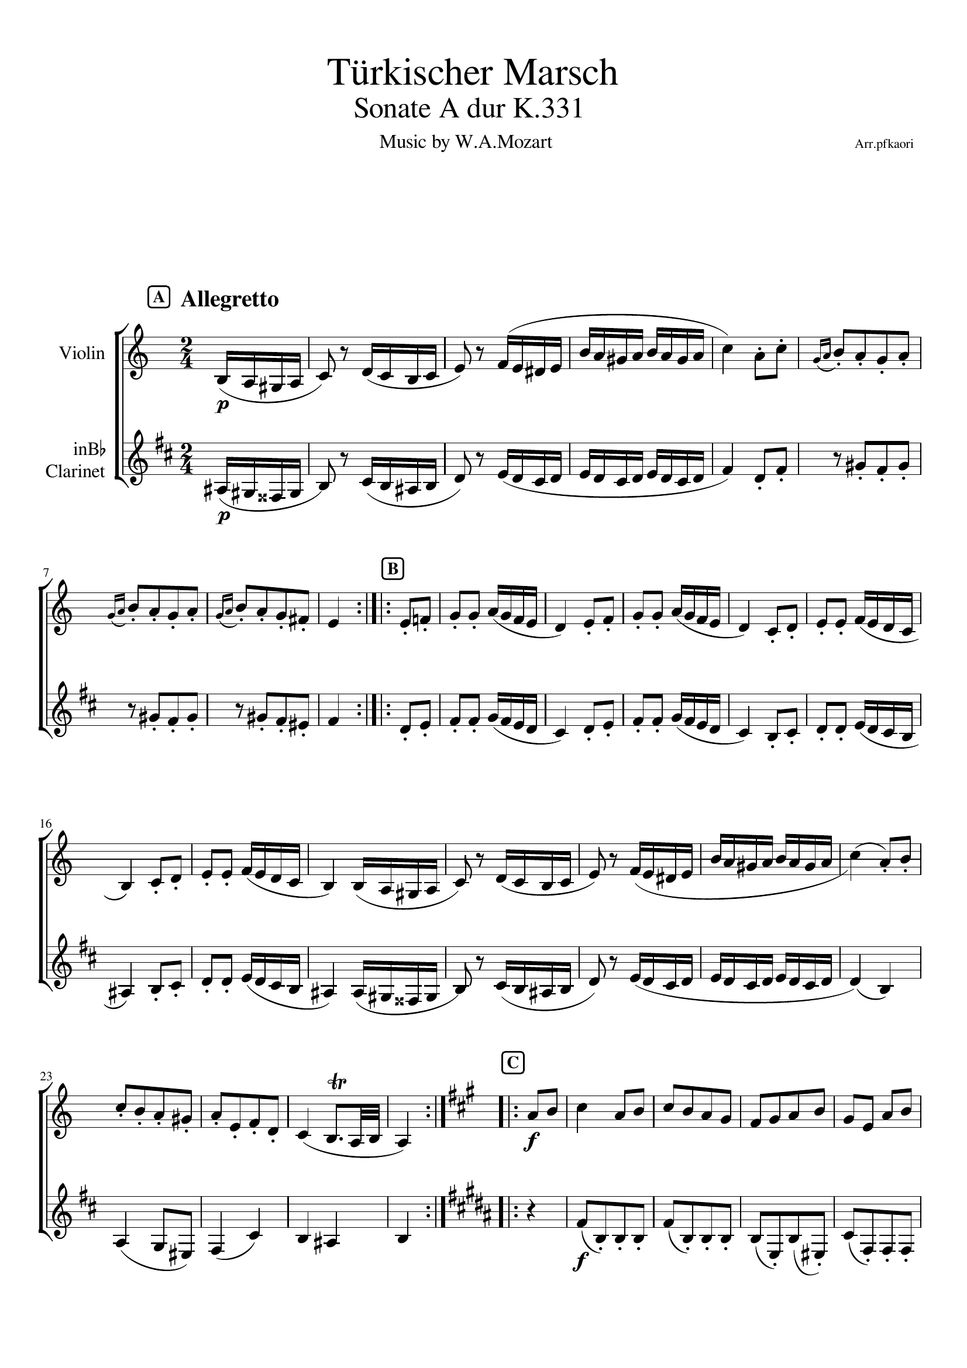 モーツァルト - トルコ行進曲 (ヴァイオリン&クラリネット/無伴奏) by pfkaori